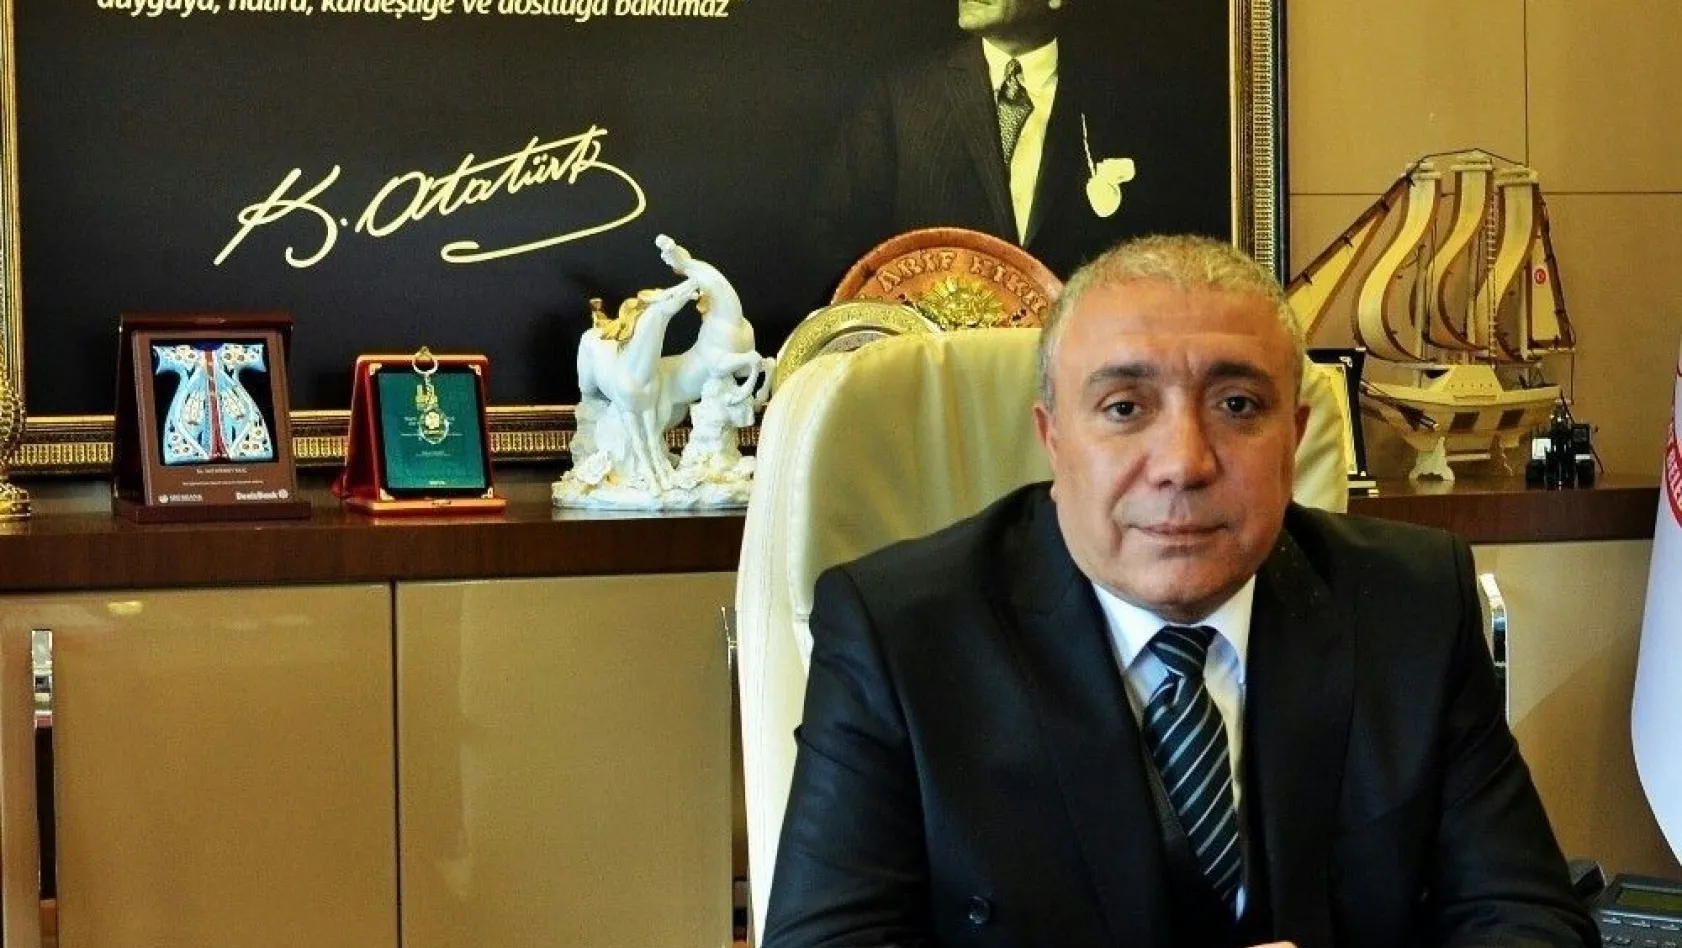 Çat Belediye Başkanı Arif Hikmet Kılıç, Bayram dolayısıyla bir kutlama mesajı yayınladı
